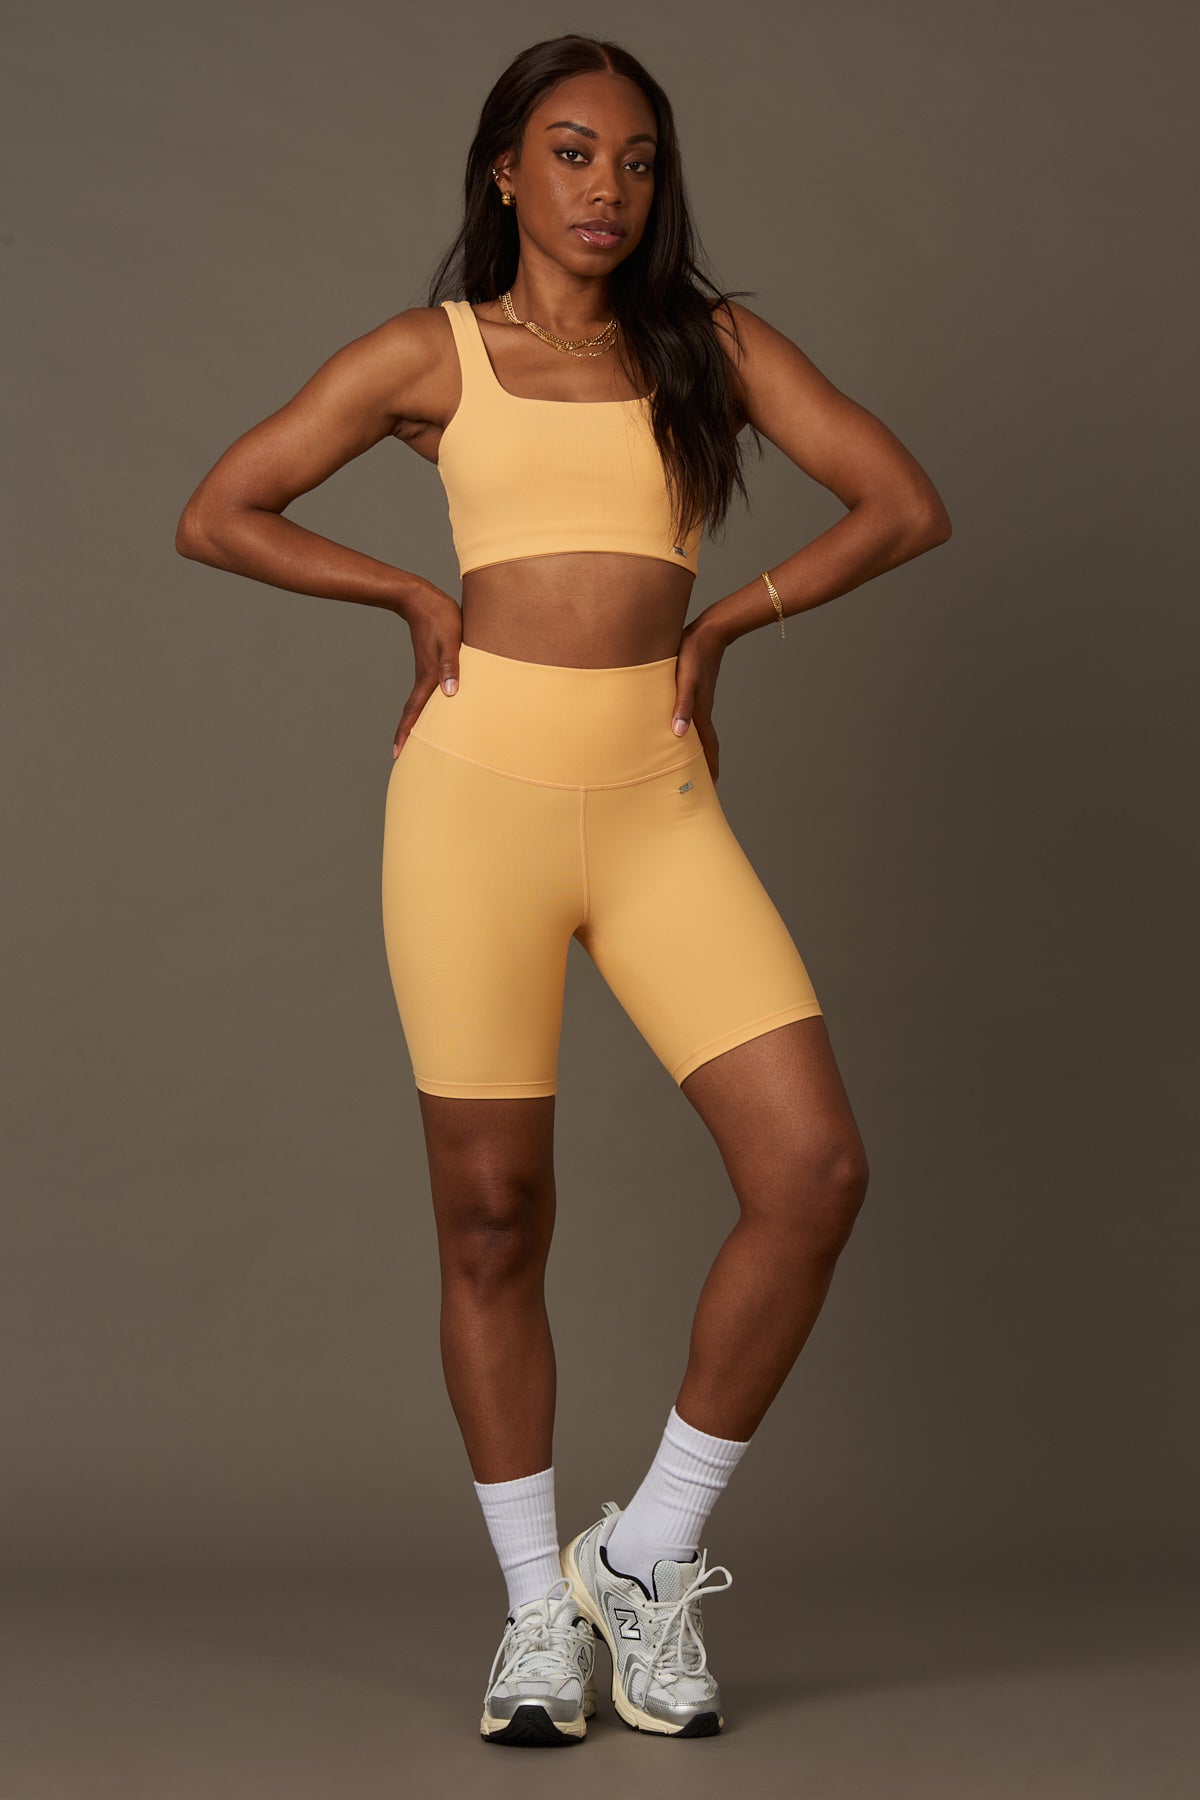 Bel Air Bra en Peach-Bras-Shop Clothing Sustainable Recycled Yoga Leggings Women On-line Barcelona Believe Athletics Sustainable Recycled Yoga Clothes